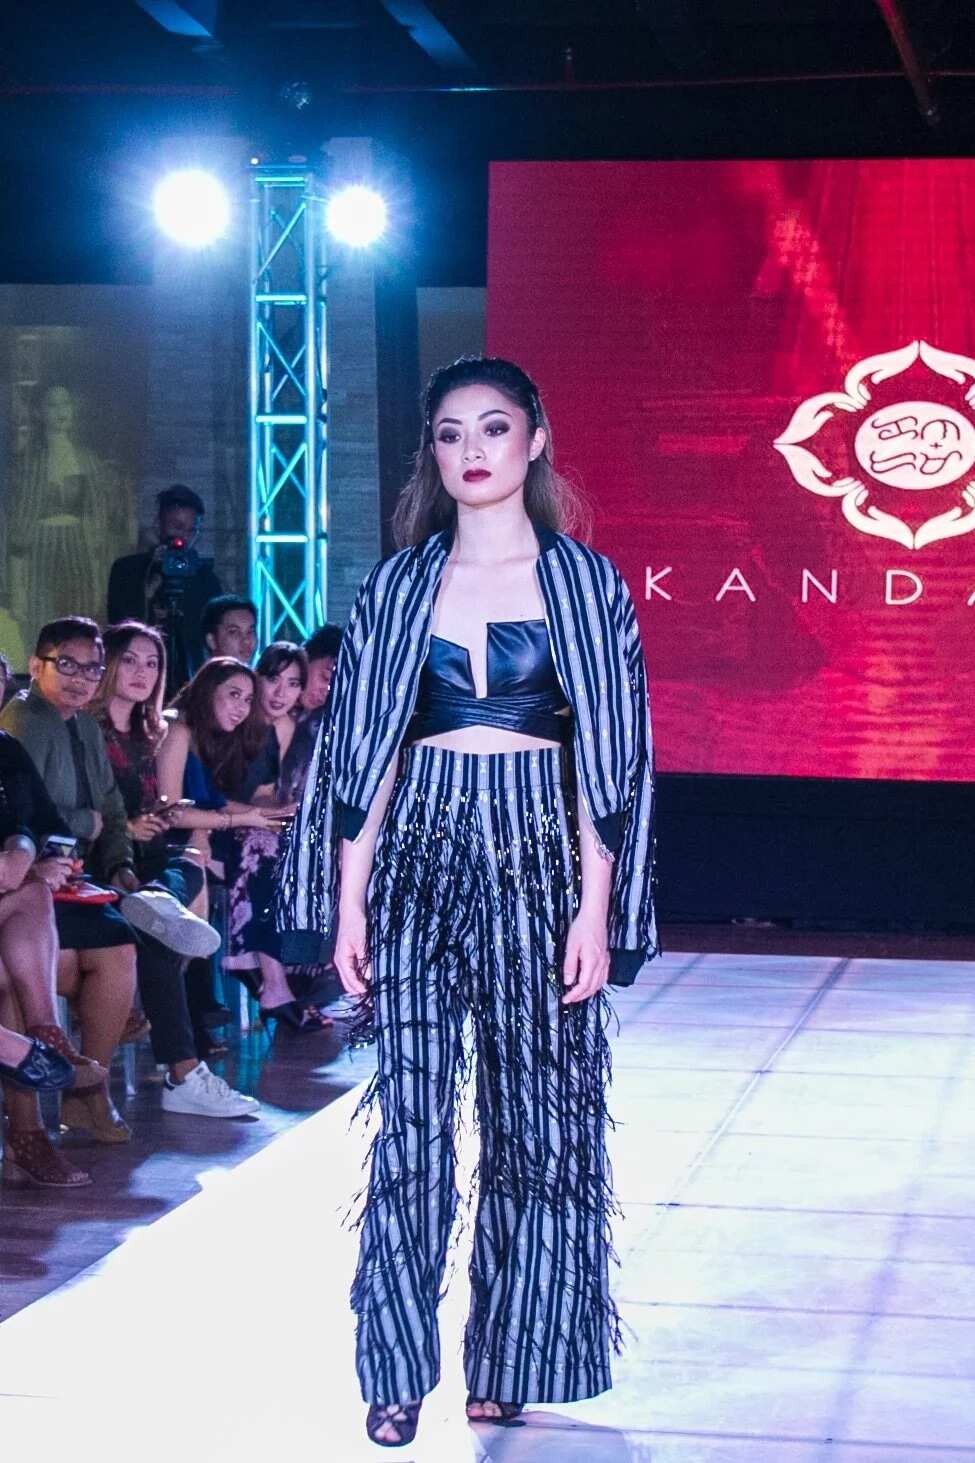 tradition-kandama-beauty-ACHDB-Manila